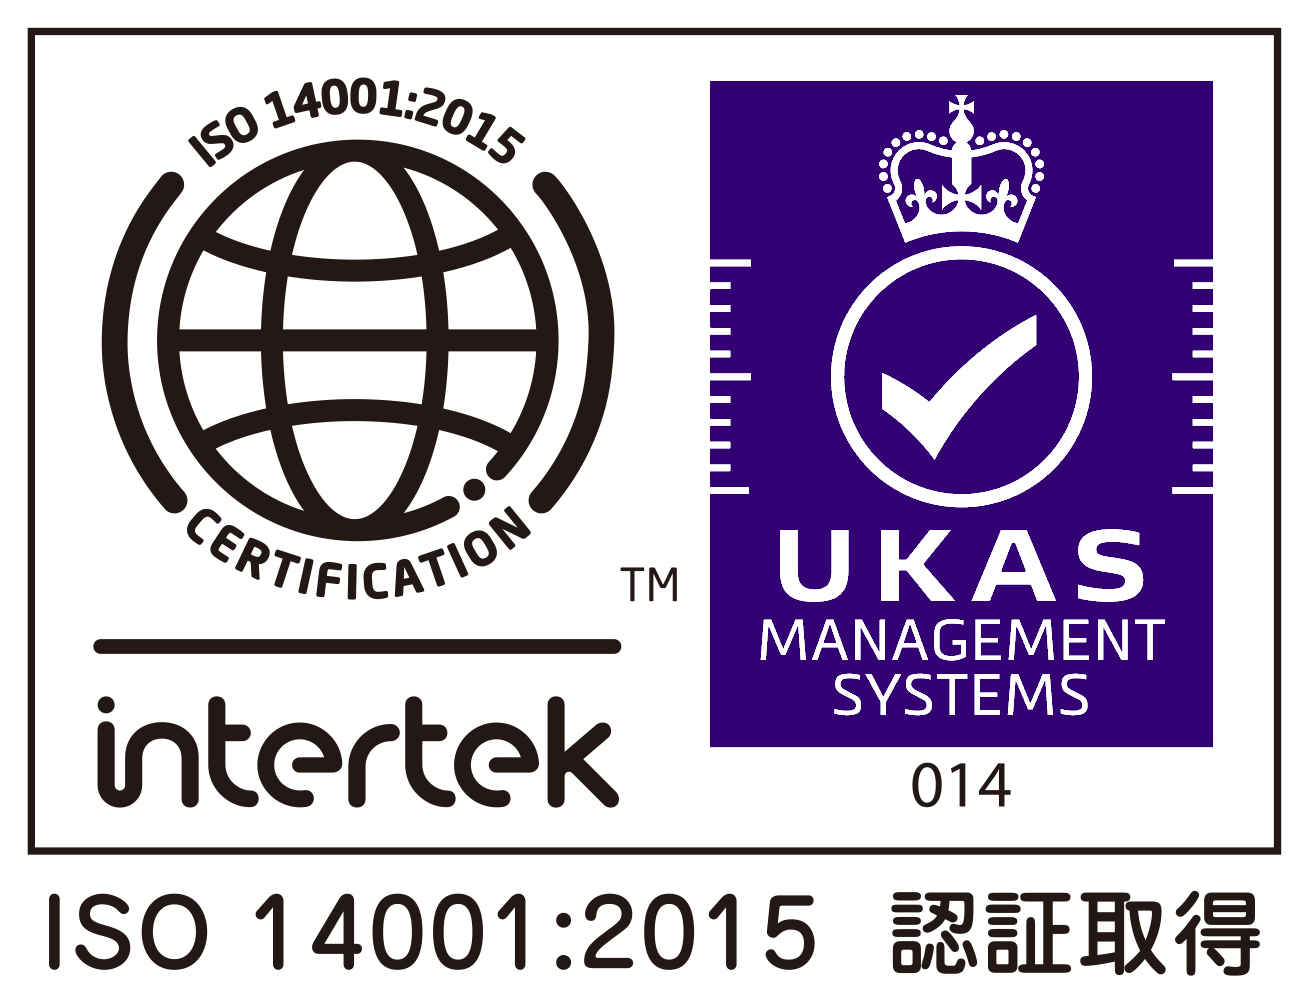 ISO140012015UKASpurple.jpg